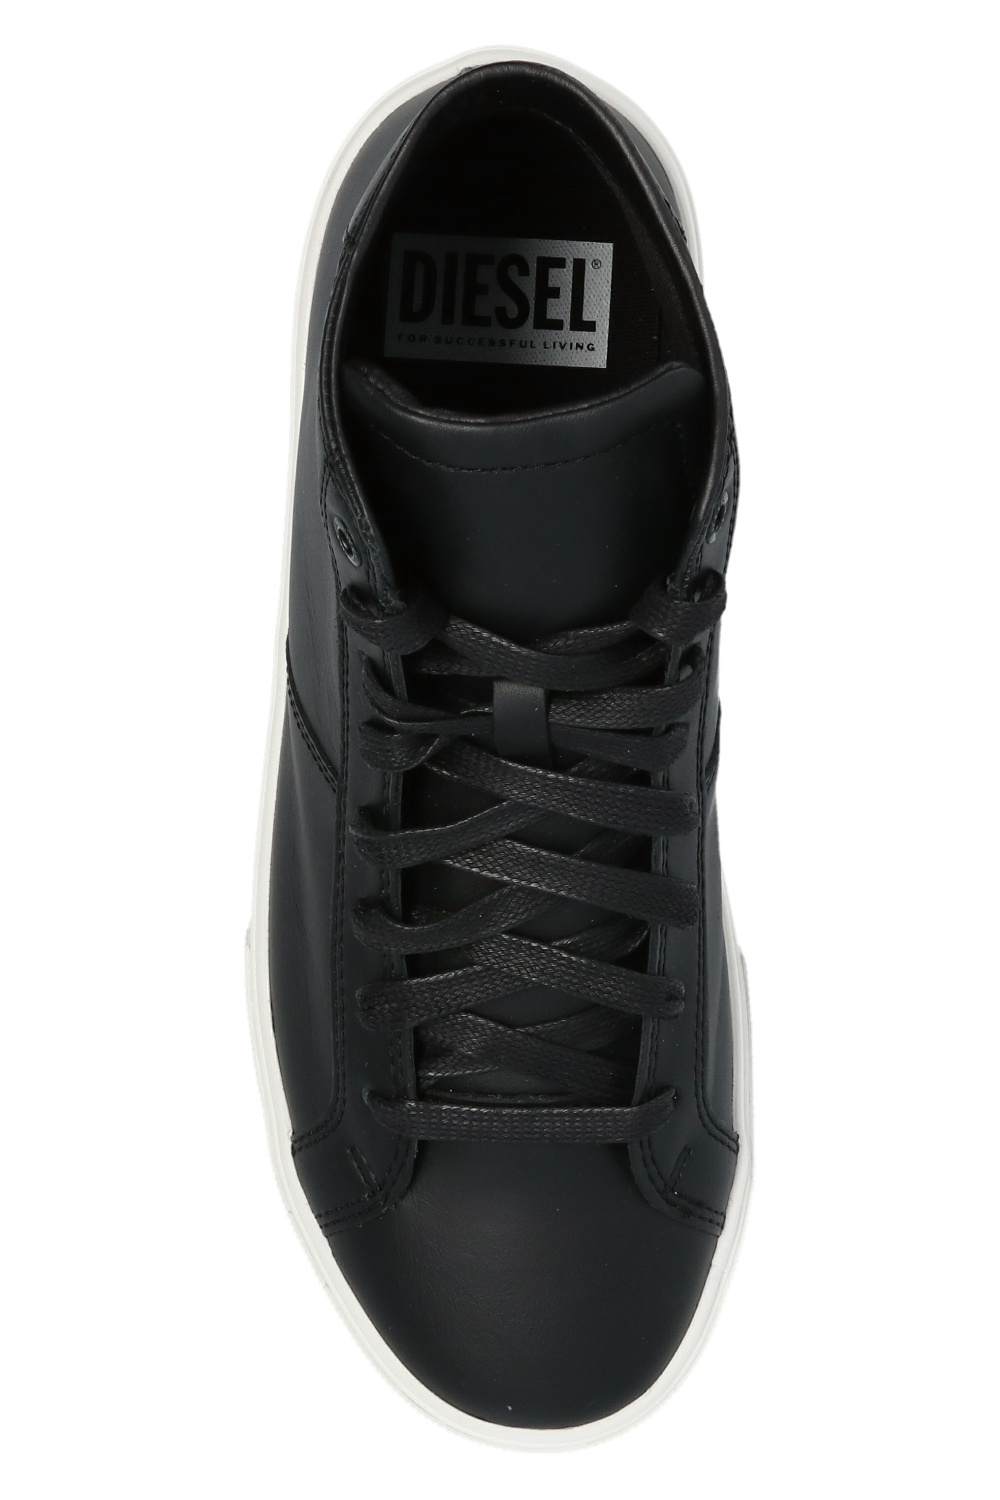 Diesel ‘S-Mydori’ high-top sneakers